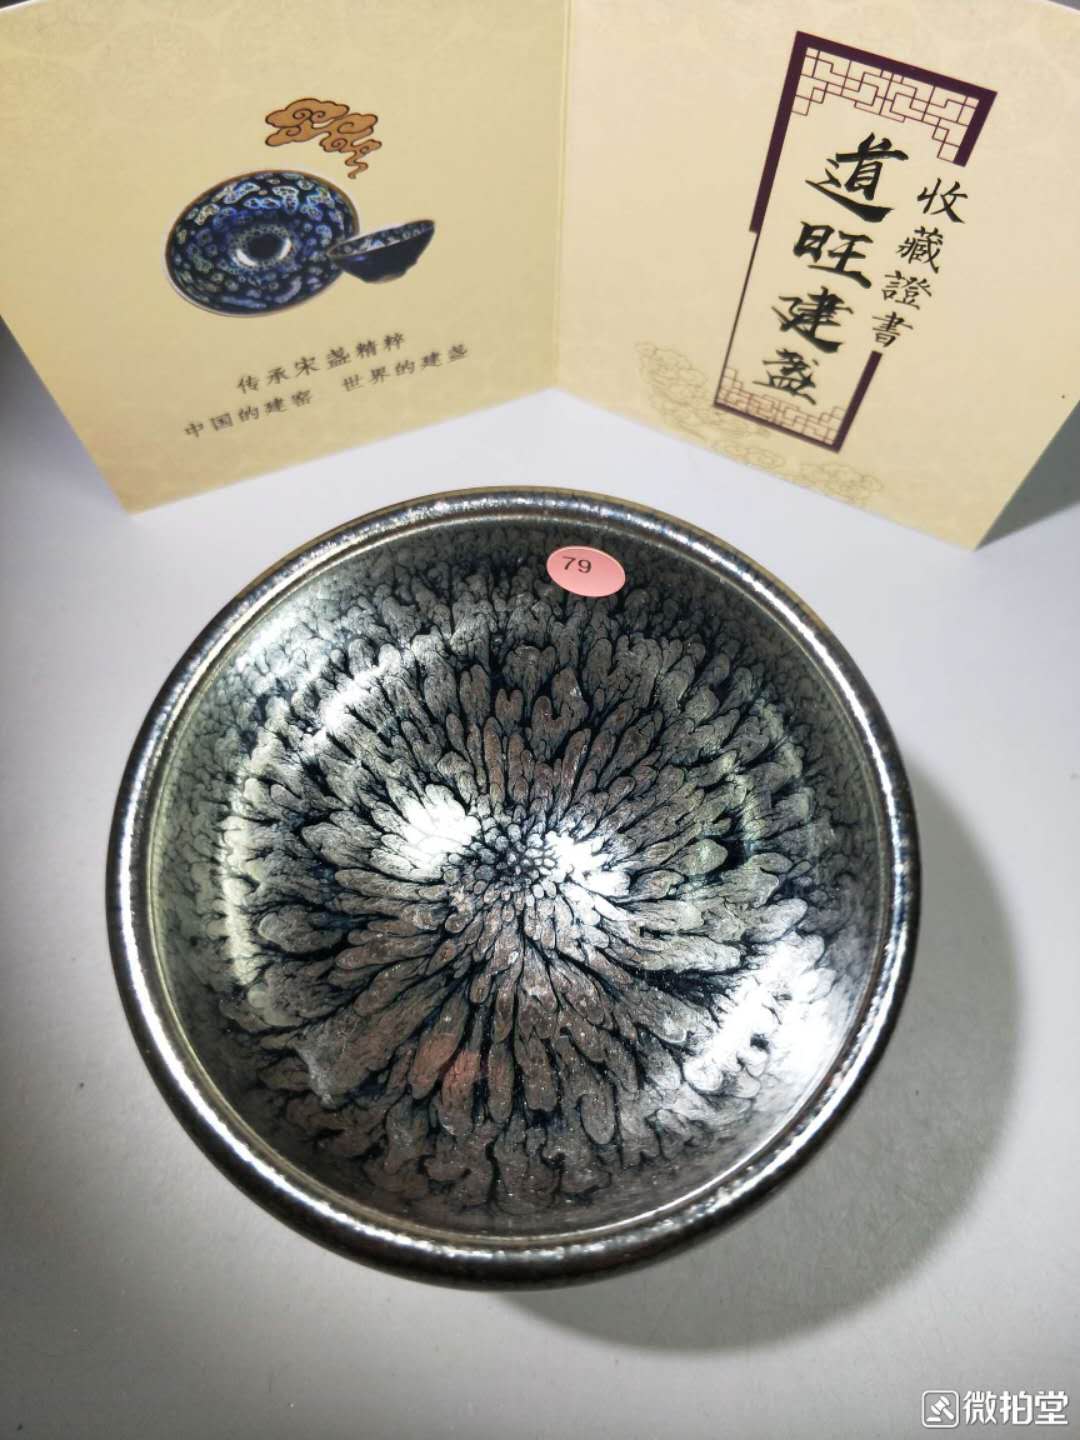 Jianzhan in porcellana tazza di tè cinese kung fu set da tè tazza da tè ceramica piccola ciotola da tè tenmoku ha fatto un bel regalo artigiano